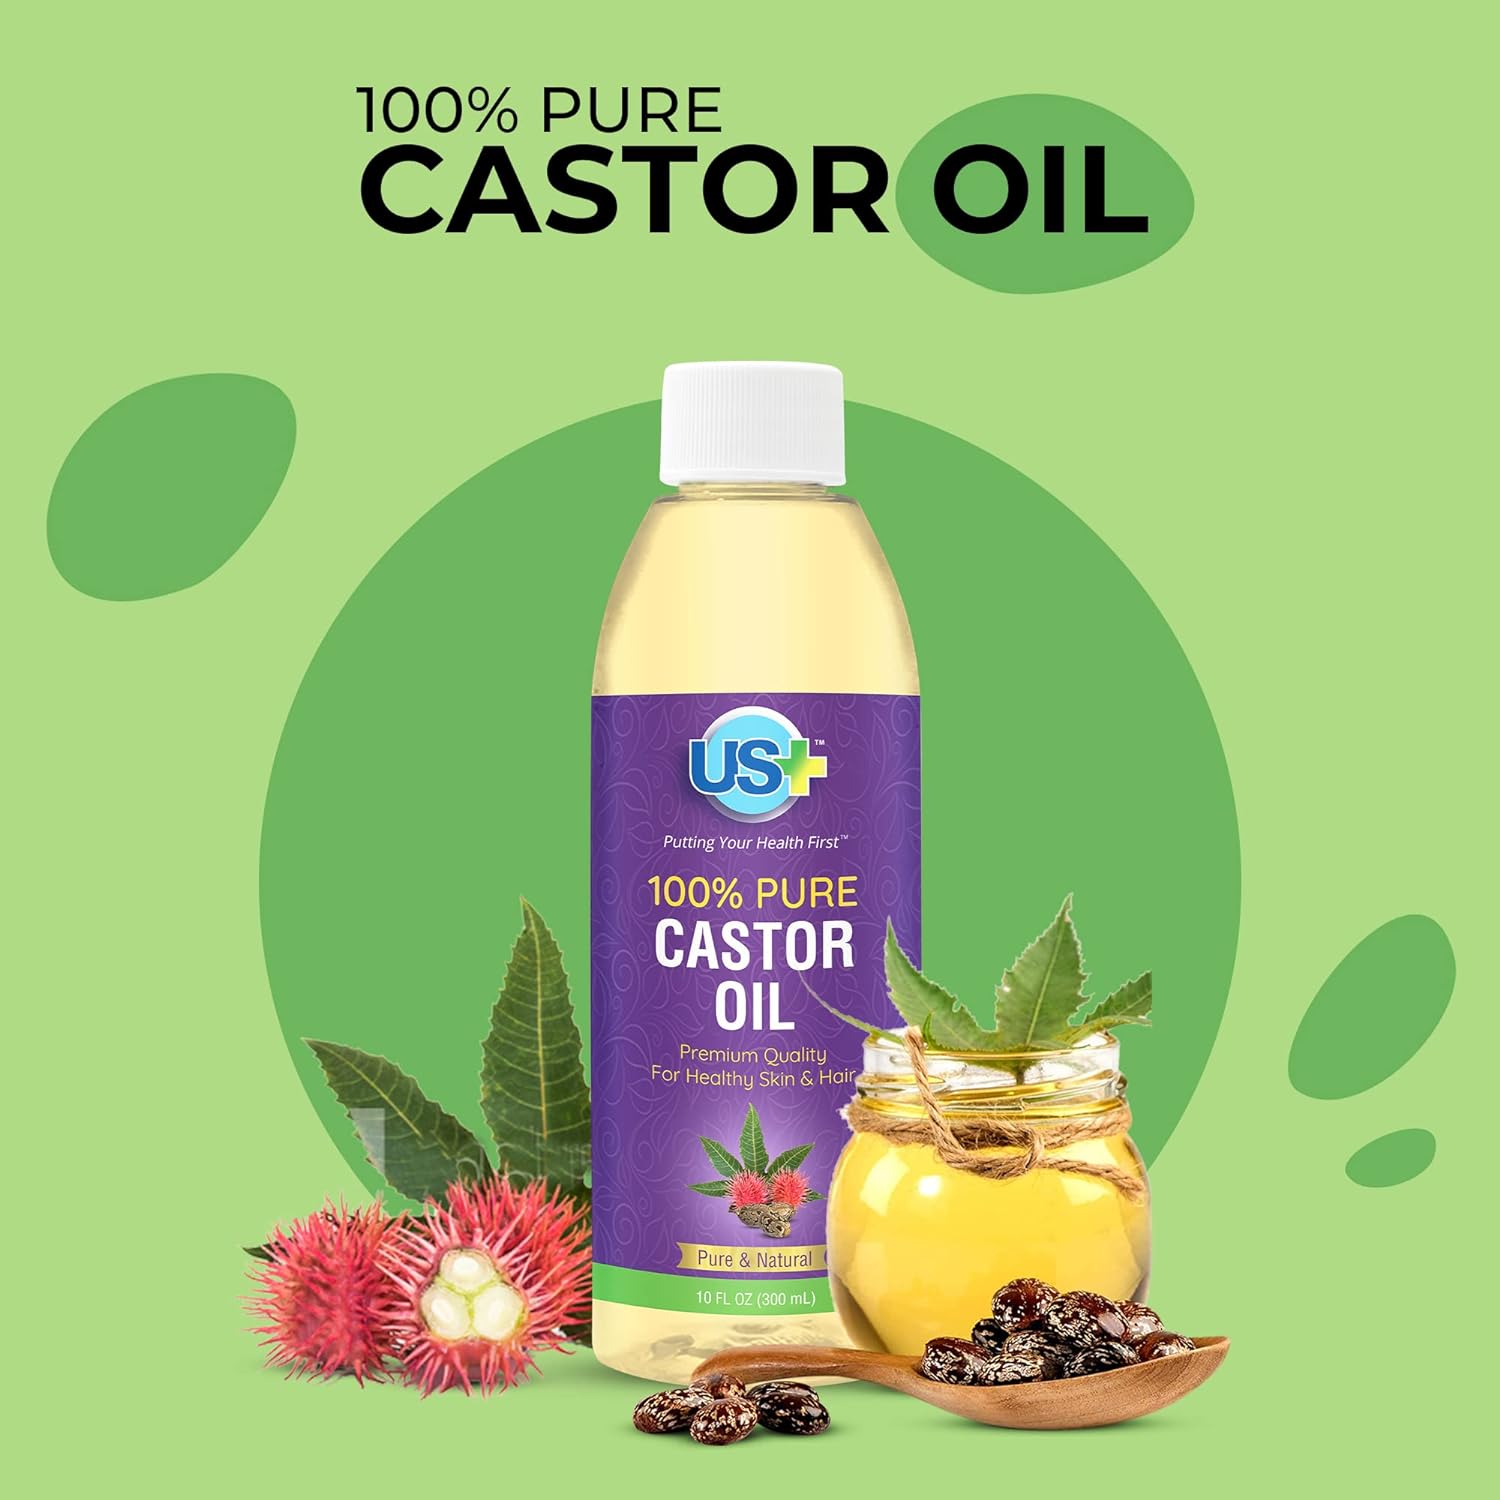 10oz Castor Oil Review